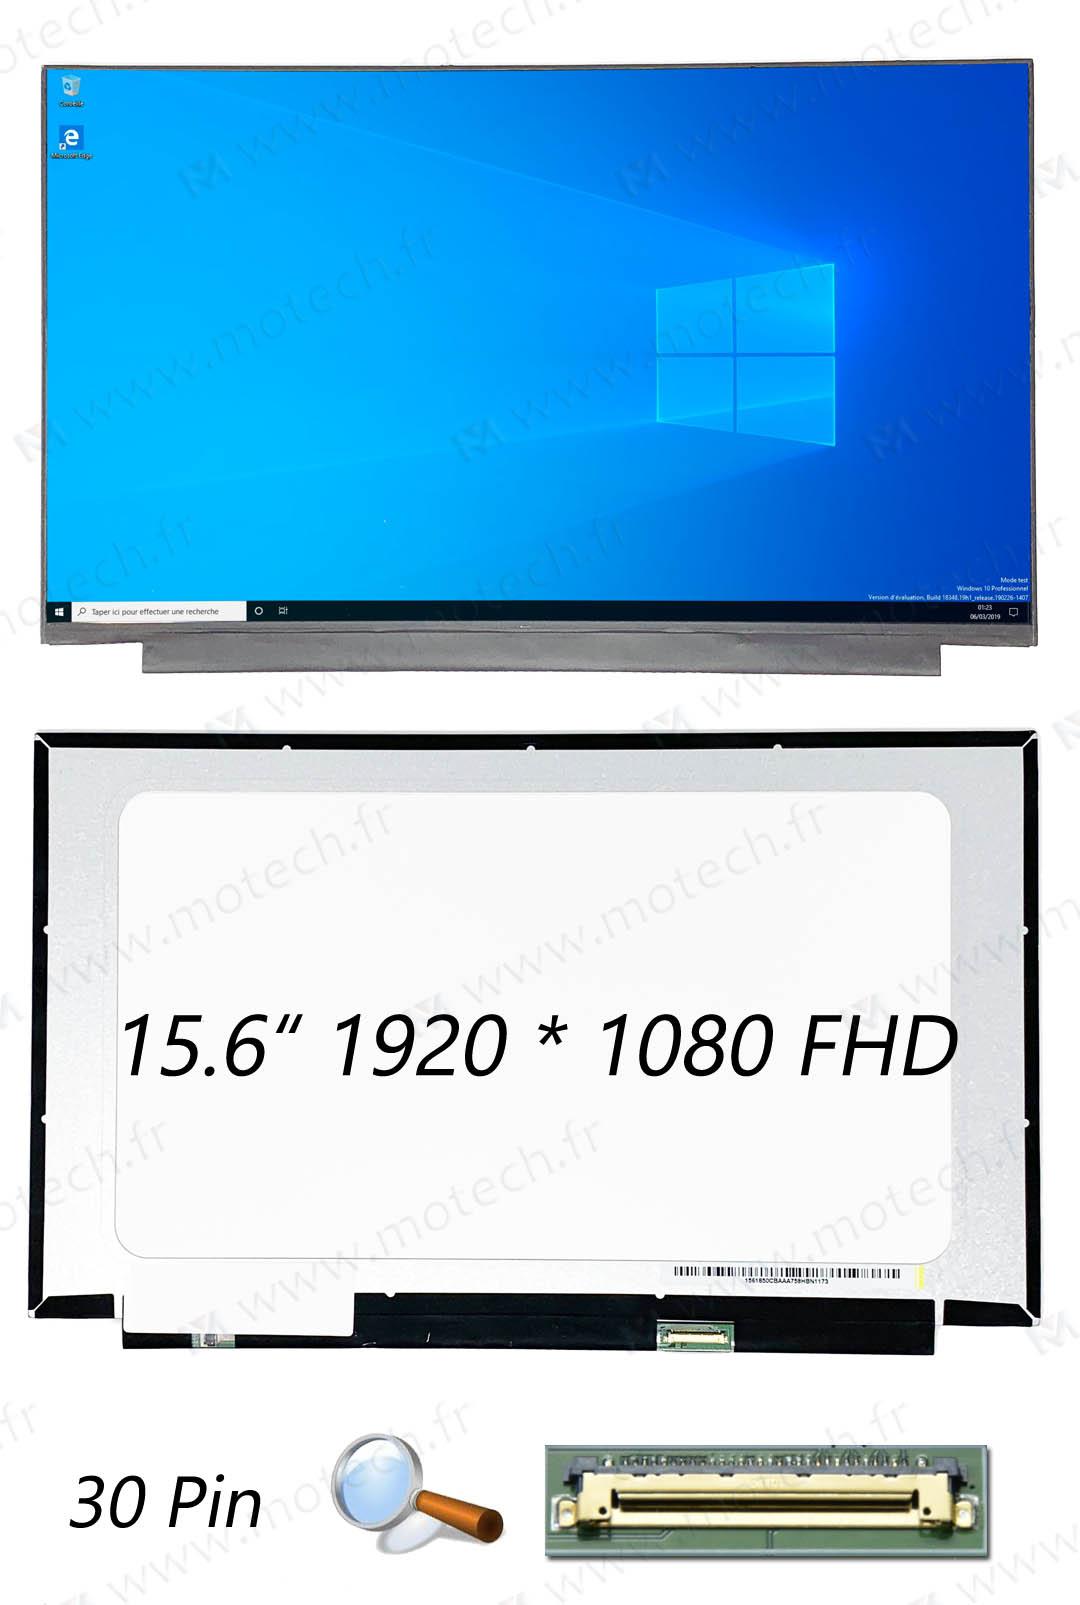 Asus VivoBook S15 S530U Dalle, Asus VivoBook S15 S530U ecran, Asus VivoBook S15 S530U screen, Asus VivoBook S15 S530U afficheur, Asus VivoBook S15 S530U dalle ecran, Asus VivoBook S15 S530U LCD,